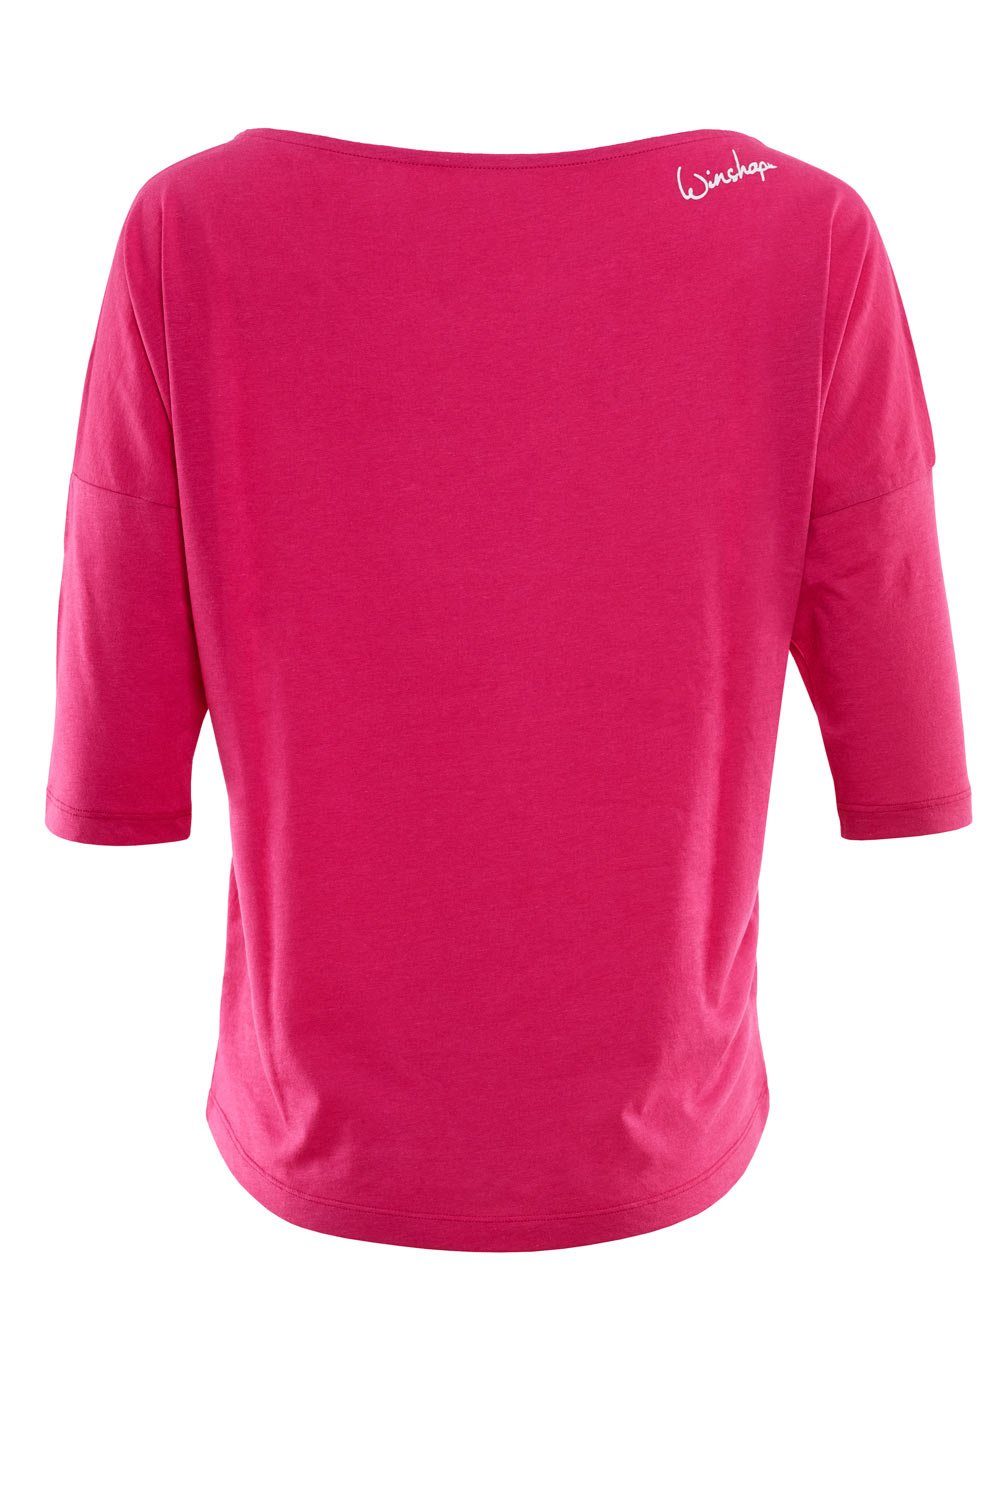 MCS001 deep pink Glitzer-Aufdruck glitzer weißem mit - 3/4-Arm-Shirt leicht Winshape ultra weiß